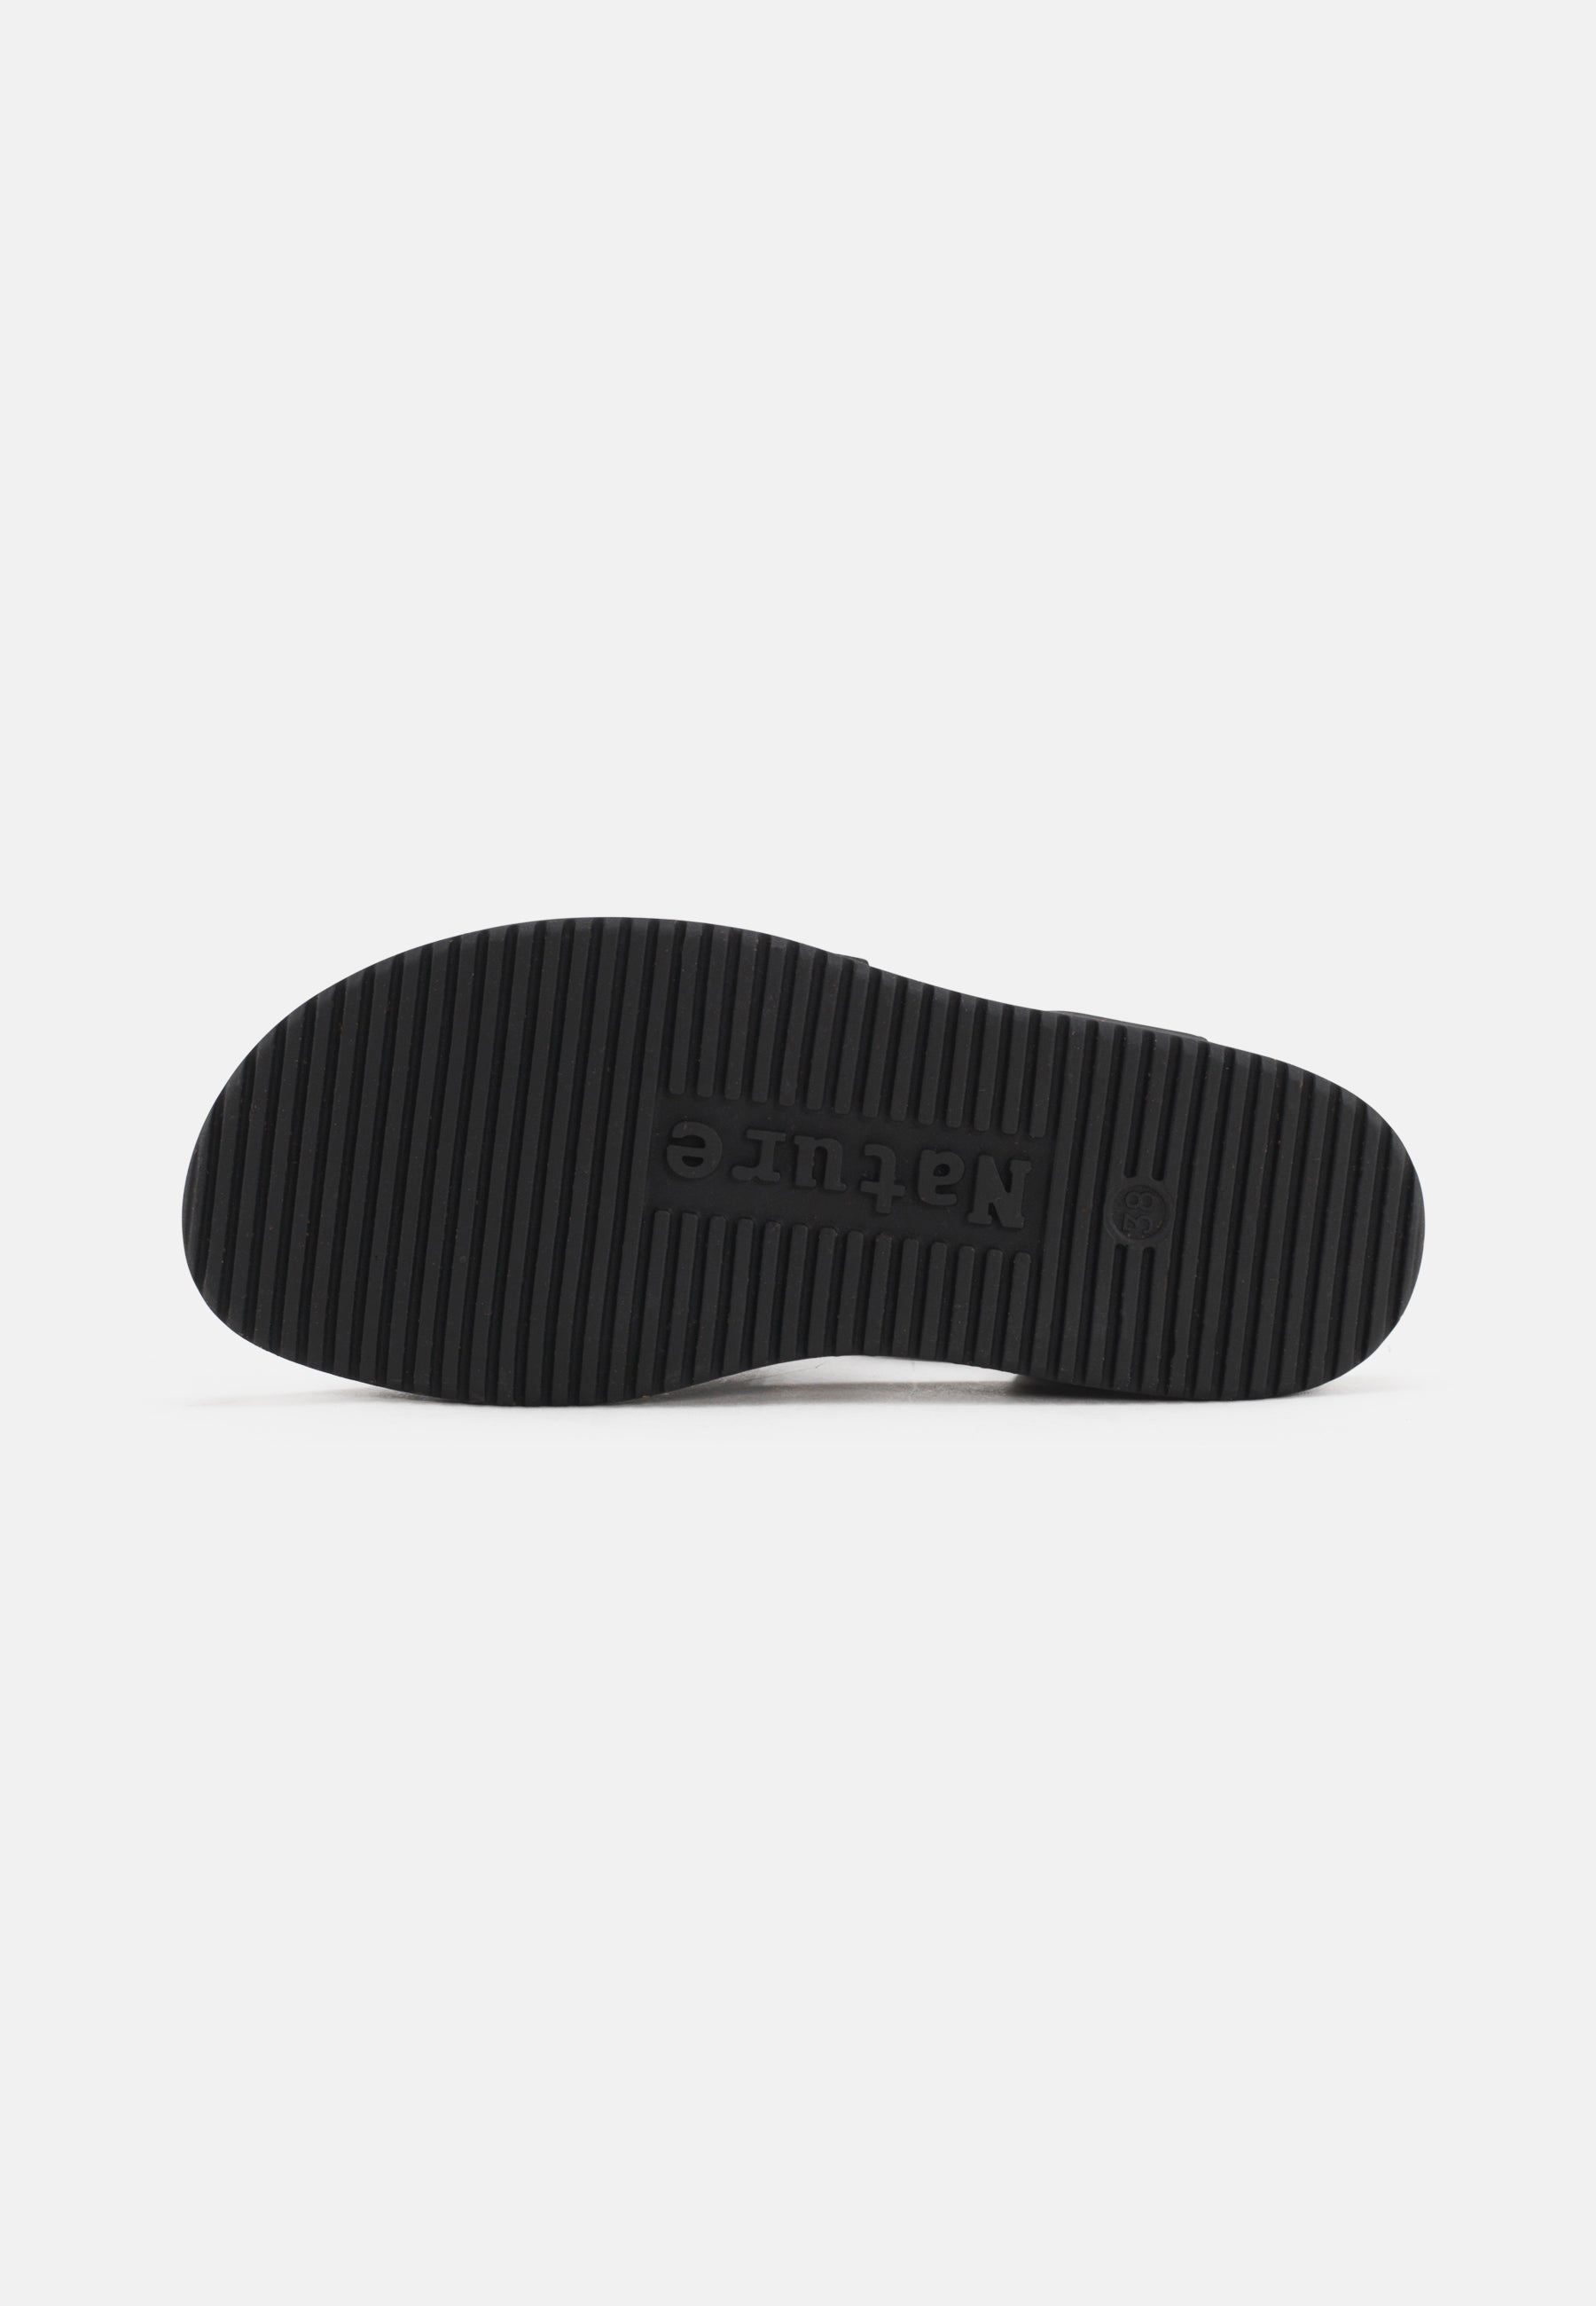 Mona Sandal Leather - Black - Nature Footwear